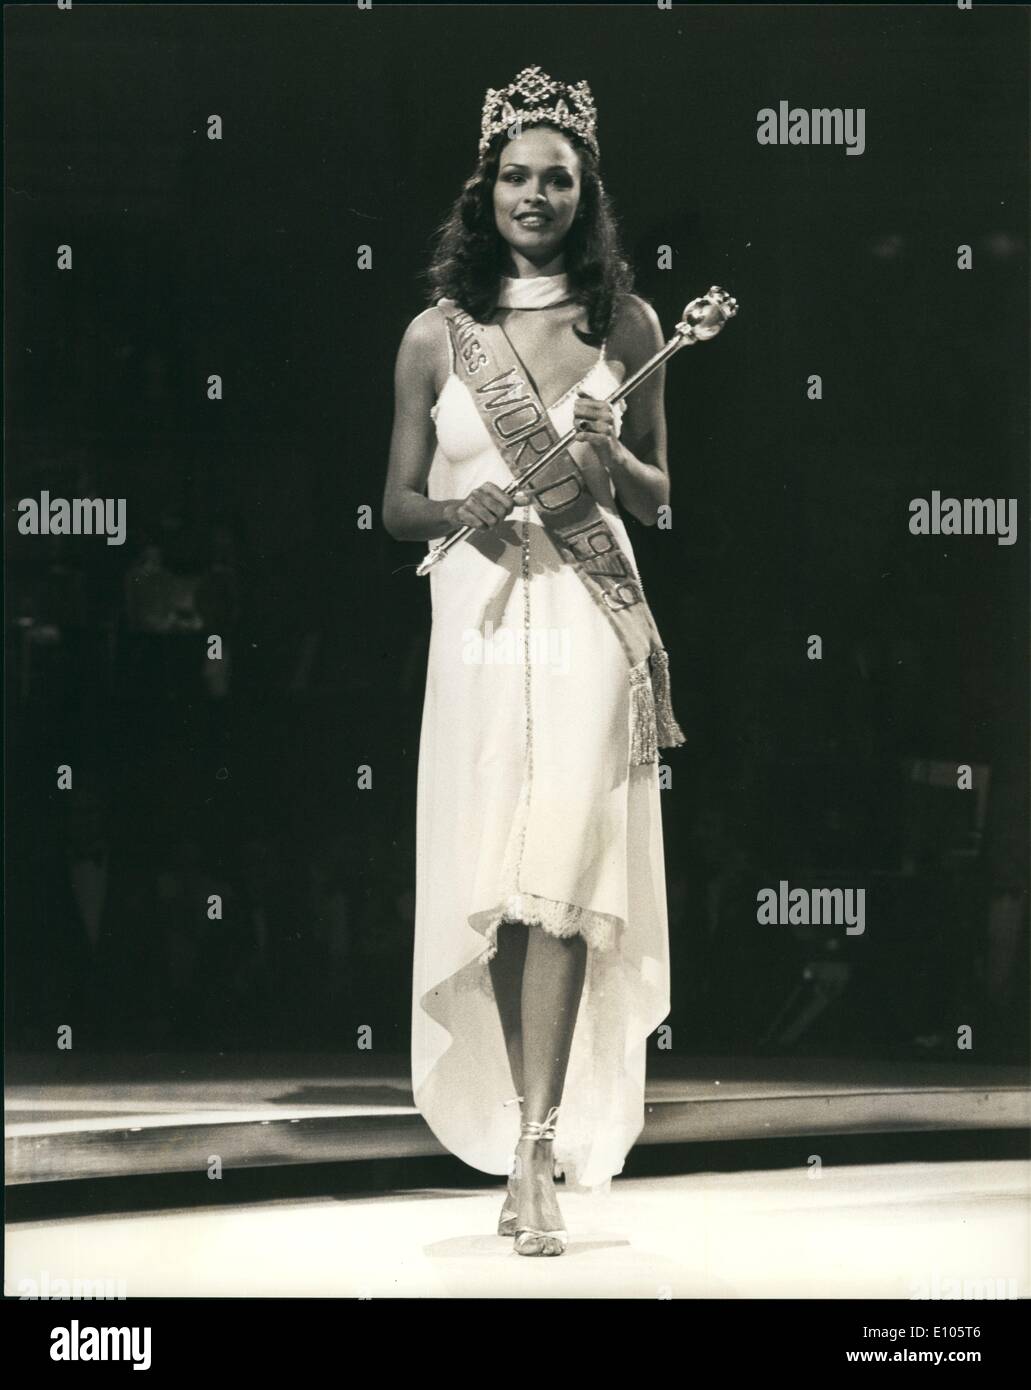 1. Januar 1970 - Gina Swainson In Miss World 79: 21 Jahre alte Gina Swainson, (Miss Bermuda) gekrönt wurde "Miss World 79 in der Royal Albert Hall letzte Nacht. Die Zweitplatzierte war Miss Großbritannien und drittens Miss Jamaica. Das Foto zeigt Königin Gina - Miss World nach dem Titelgewinn gestern Abend gesehen. Stockfoto